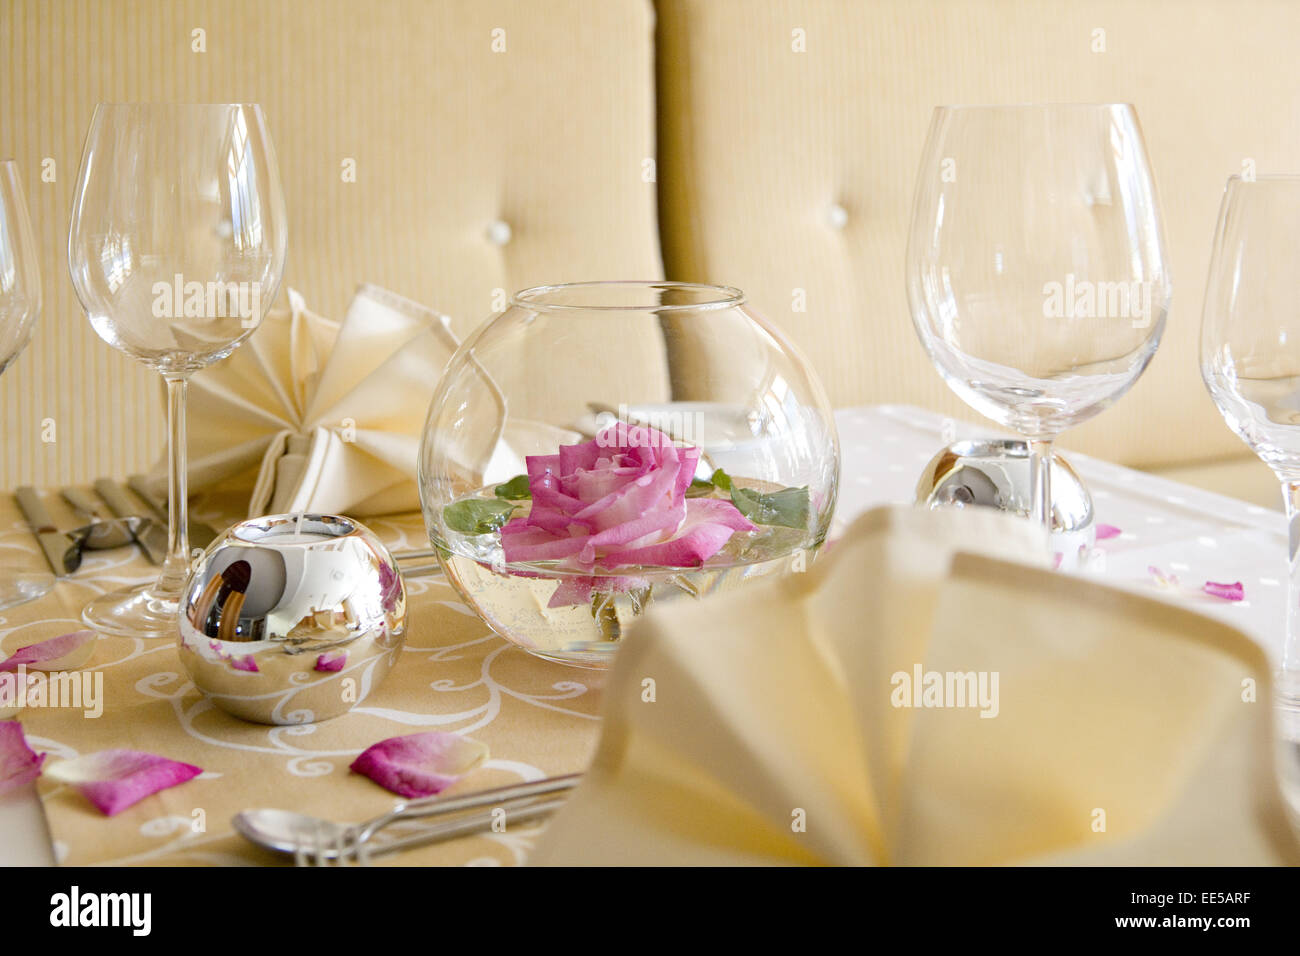 Tisch, gedeckt, festlich, dettaglio Tischdeko, Tischdekoration, Rosa, Rosenblaetter, Glaeser, Weinglas, Wasserglas, ristorante, se Foto Stock